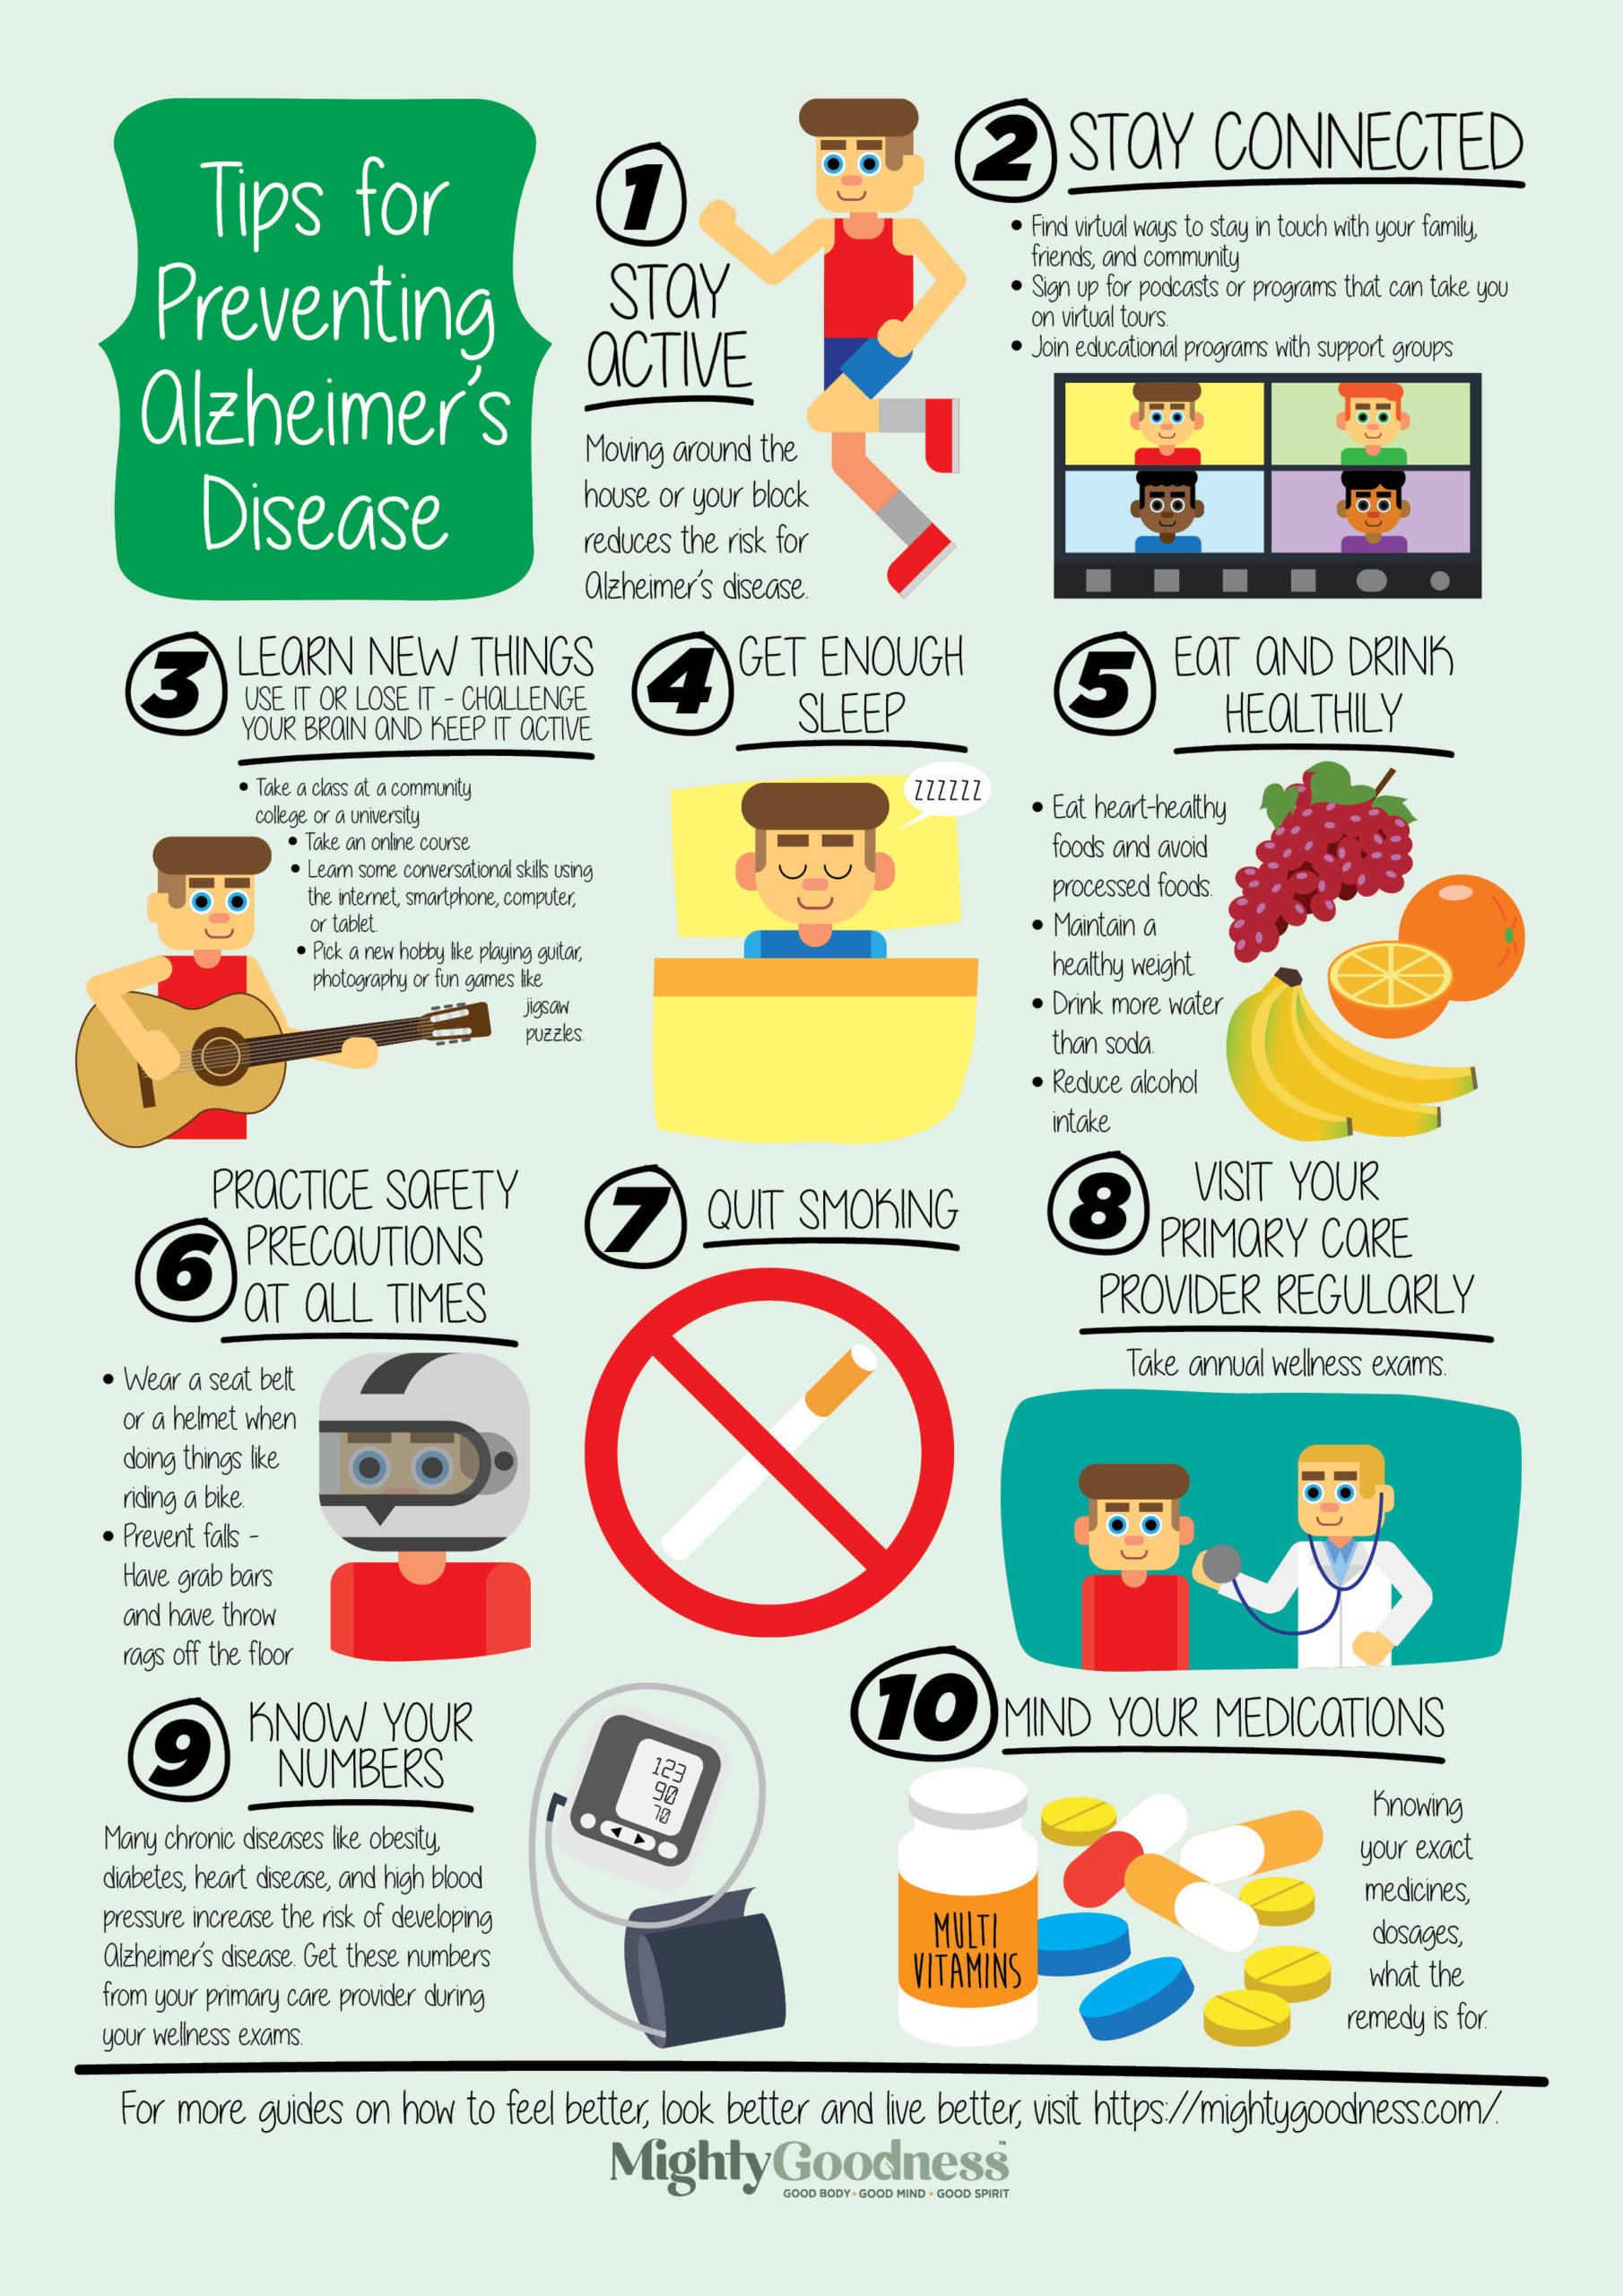 10 Tips for Preventing Alzheimer